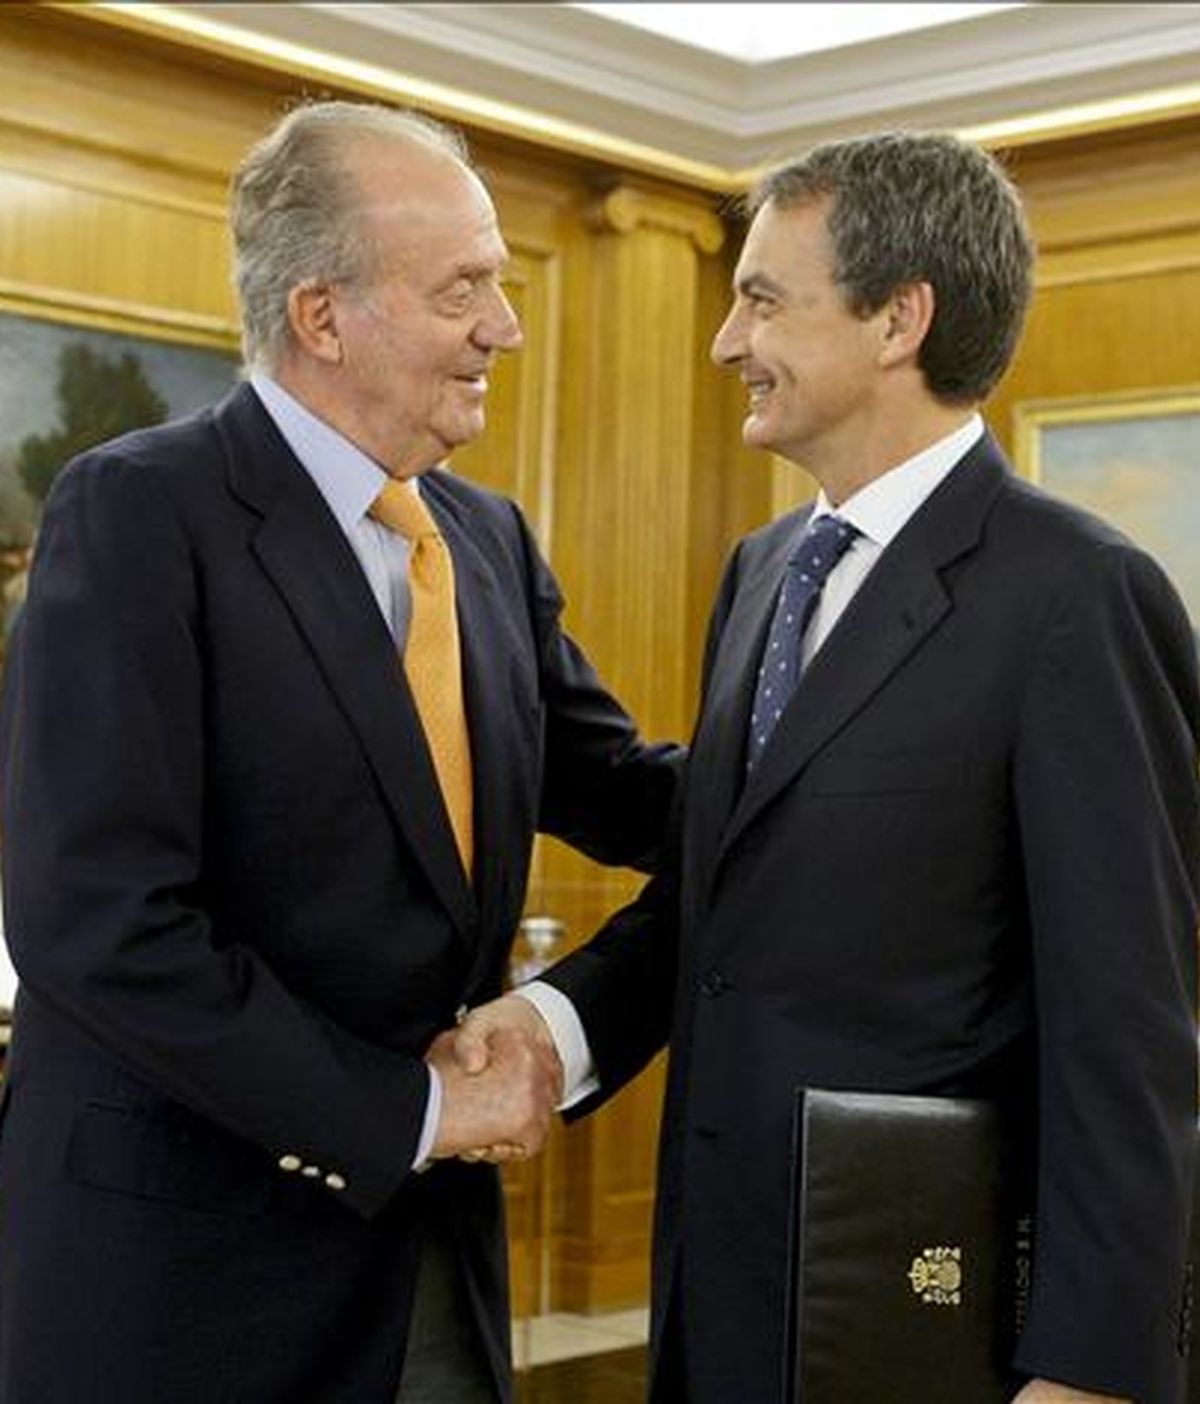 El Rey Juan Carlos recibe al presidente del Gobierno, José Luis Rodríguez Zapatero, en el Palacio de la Zarzuela. EFE/Archivo